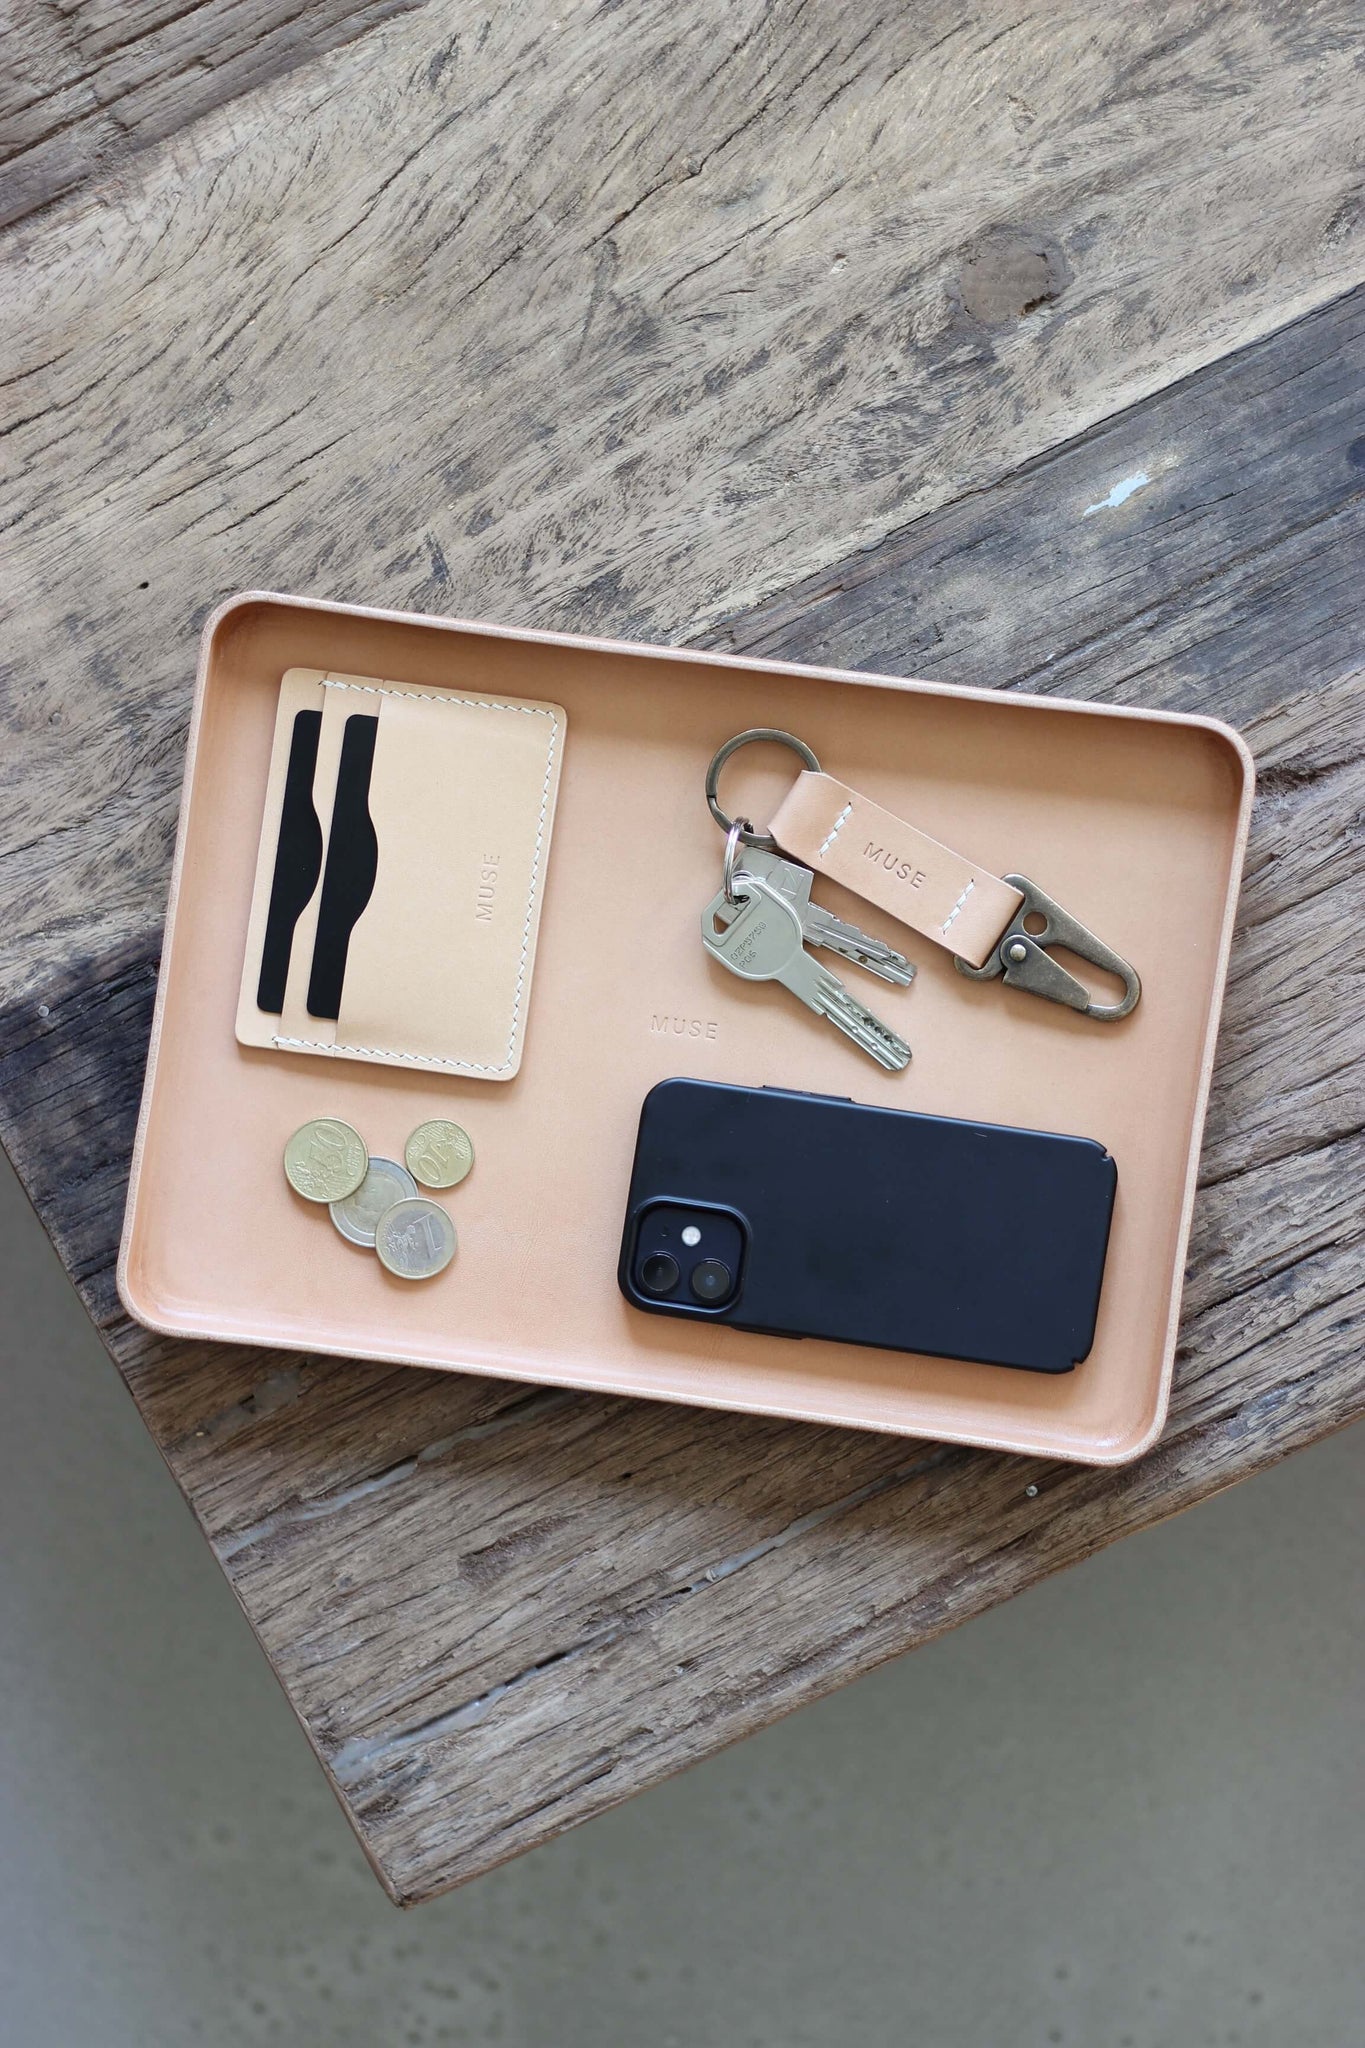 Eine Ablageschale aus Leder in Natural auf einer Holzplatte und in dieser liegt ein Handy, Kleingeld, ein Kartenetui und ein Schlüsselanhänger.